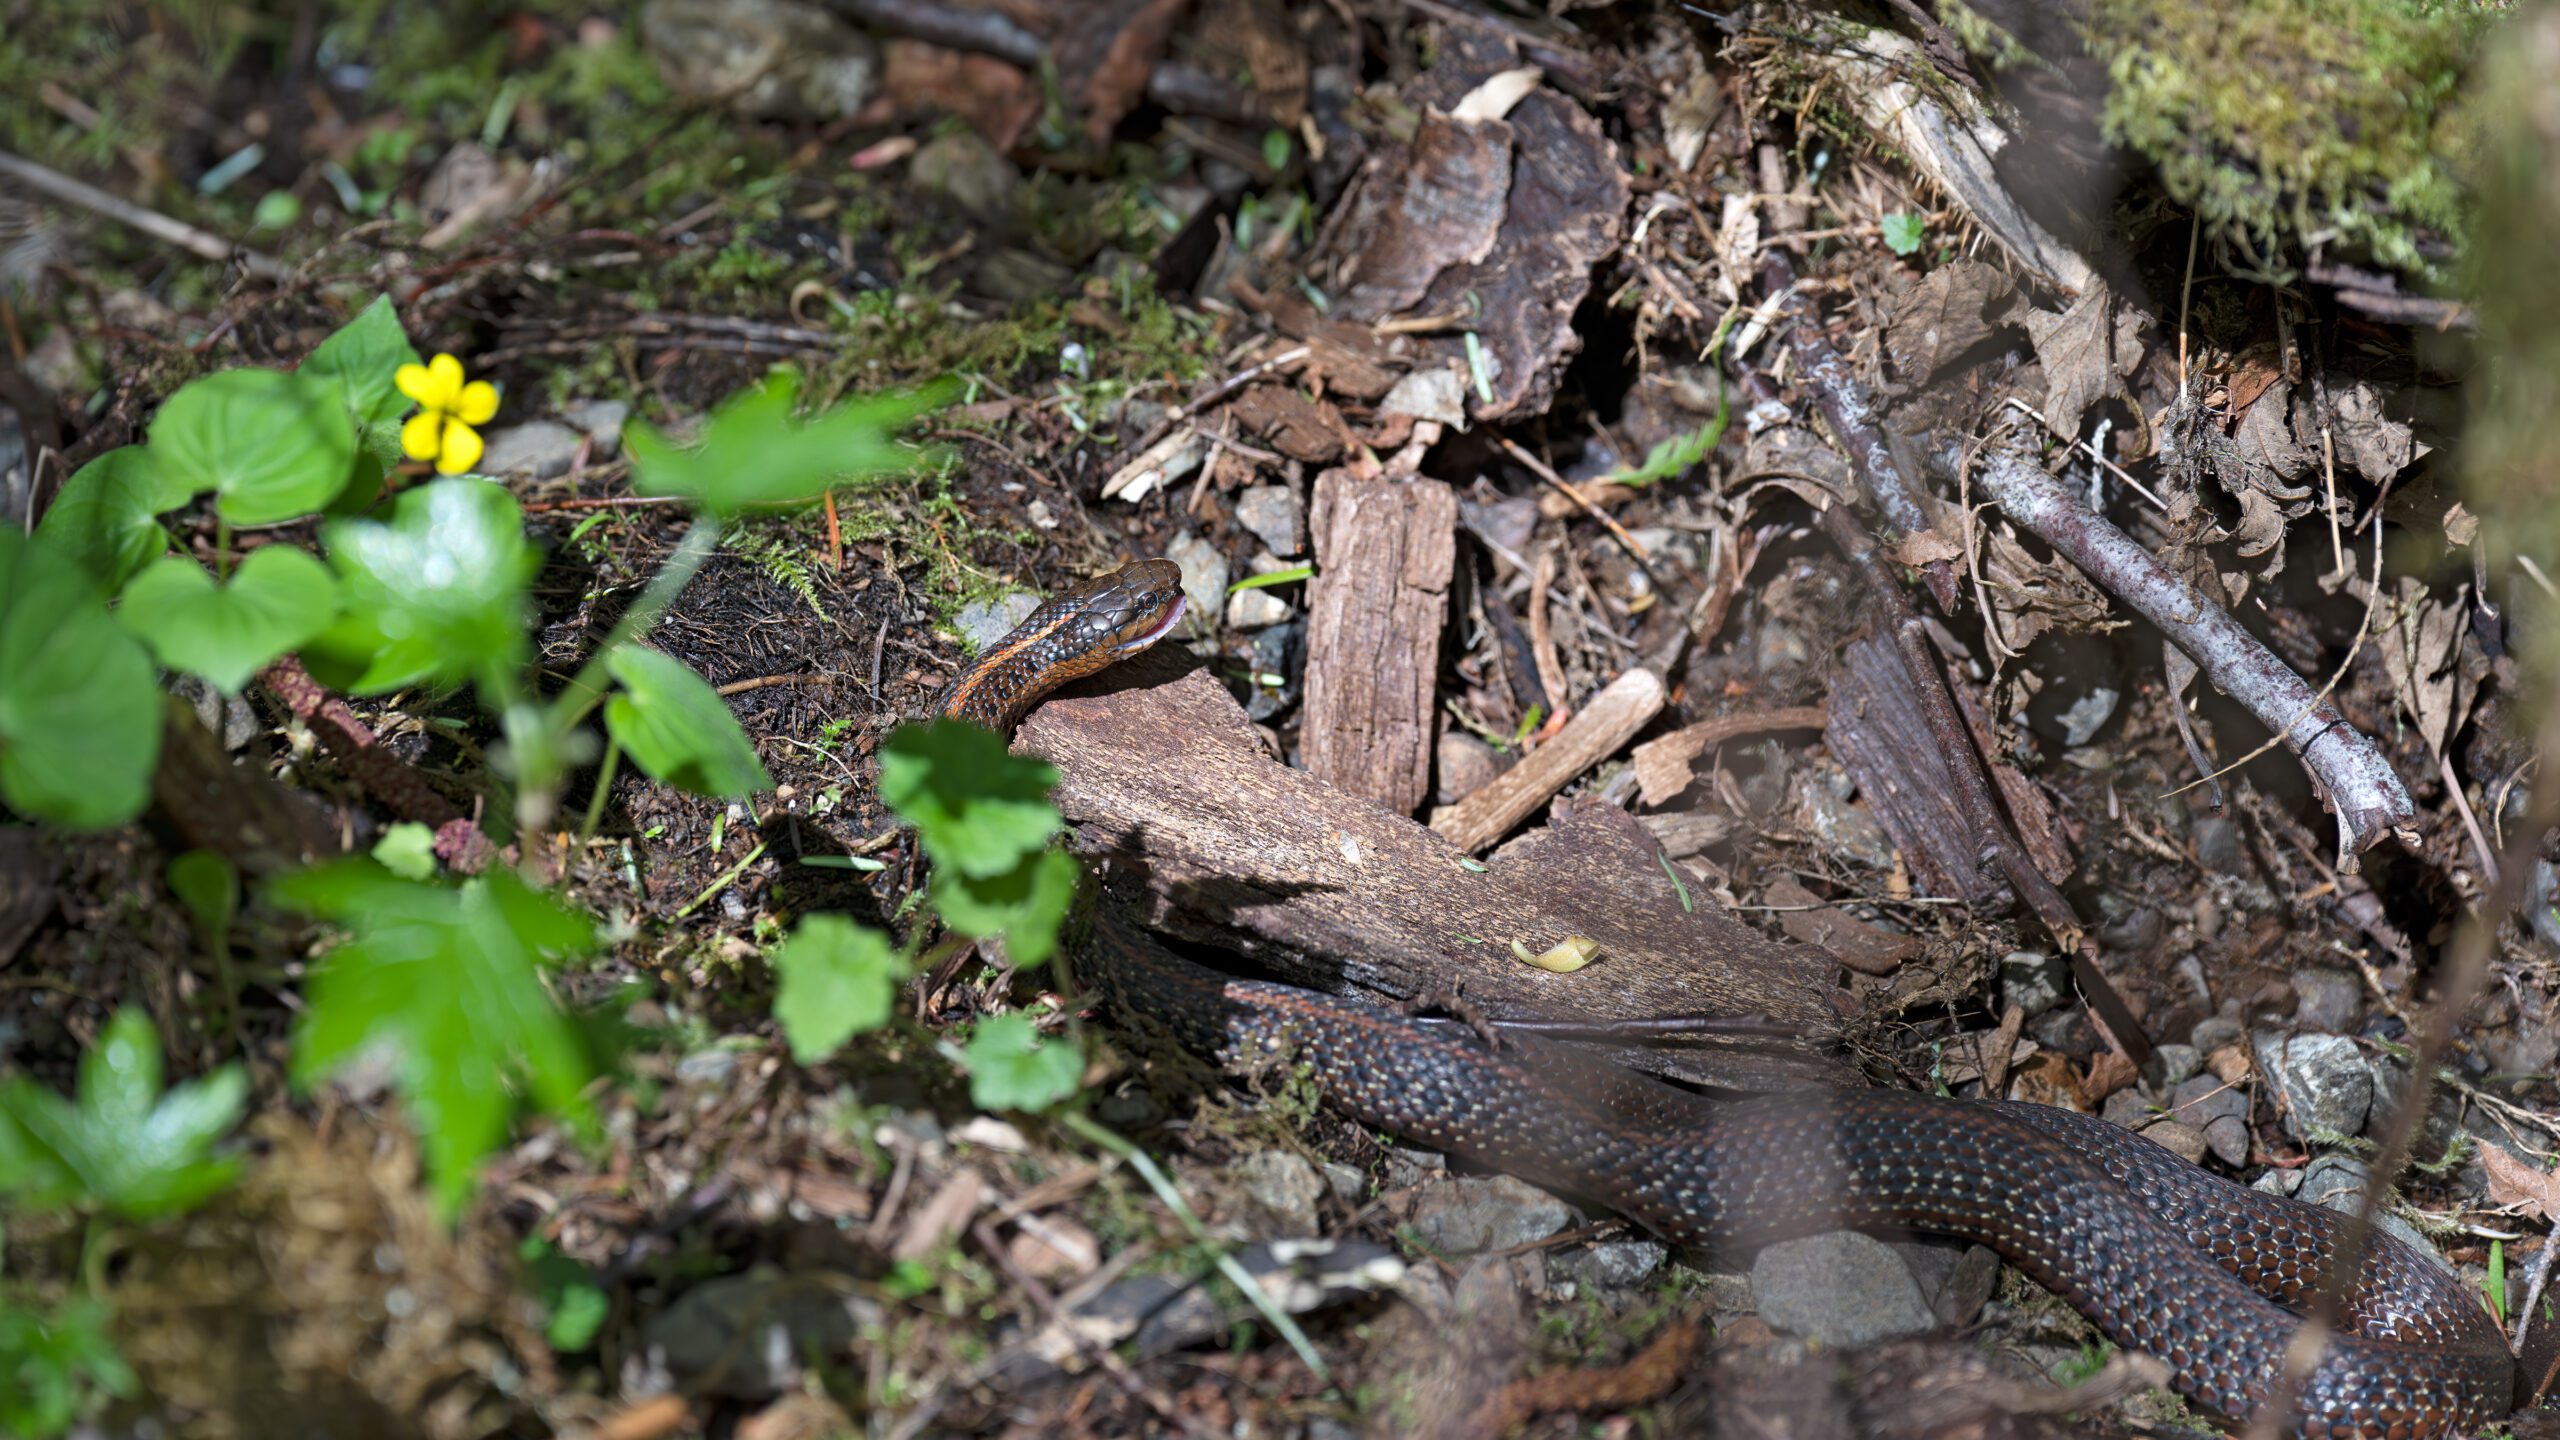 A female garter snake.